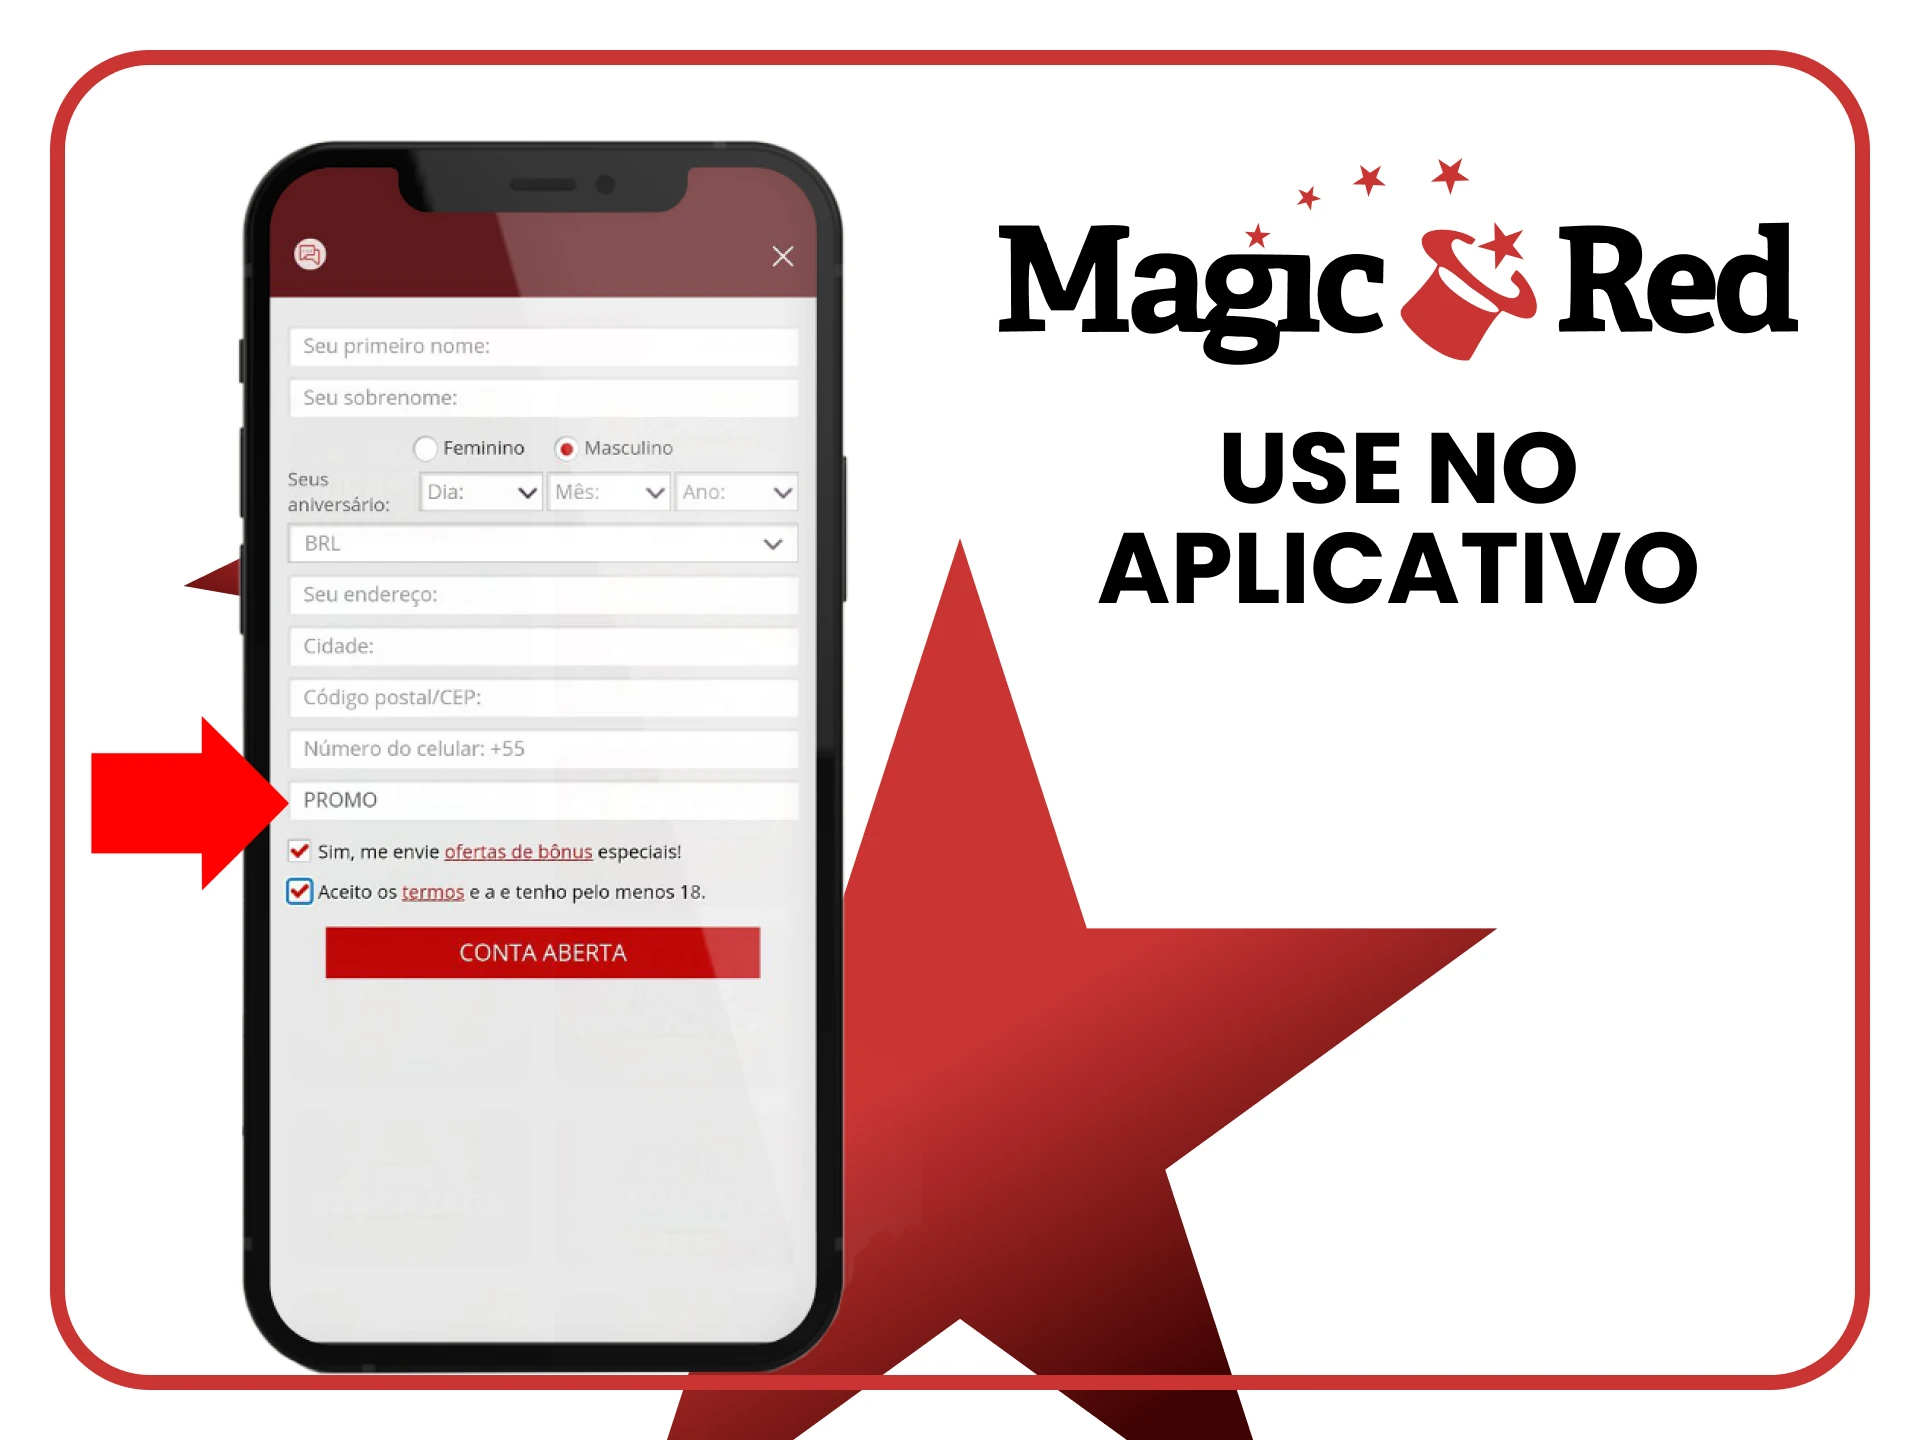 Você pode usar o código promocional no aplicativo Magic Red.